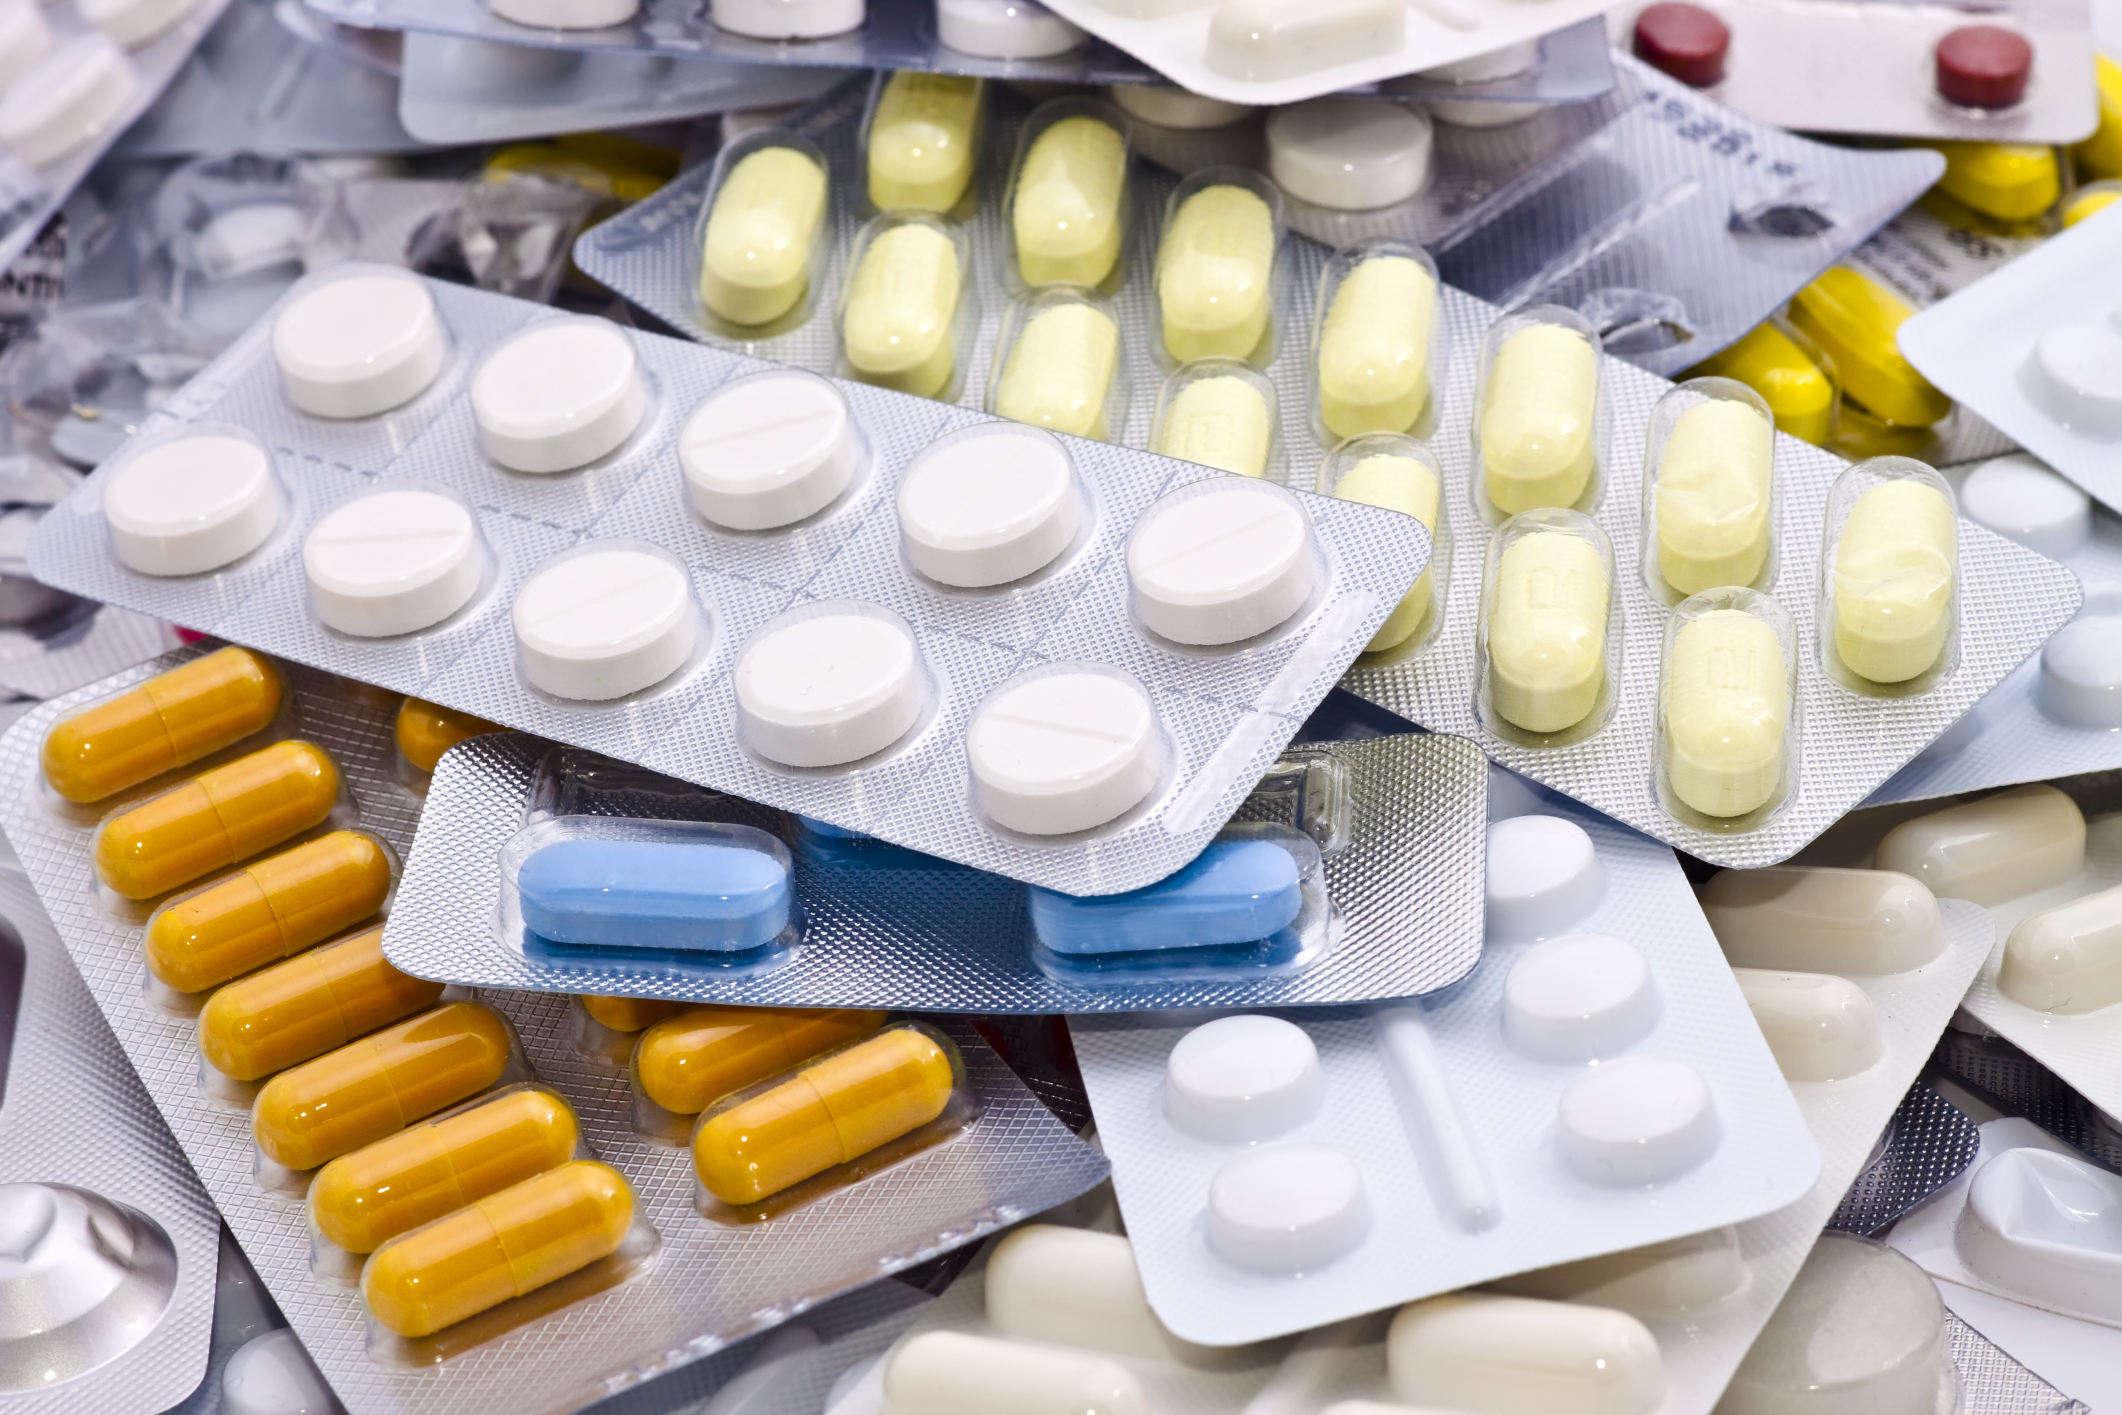 Поставки импортных лекарственных препаратов в белорусские аптеки поставляются практически ежедневно